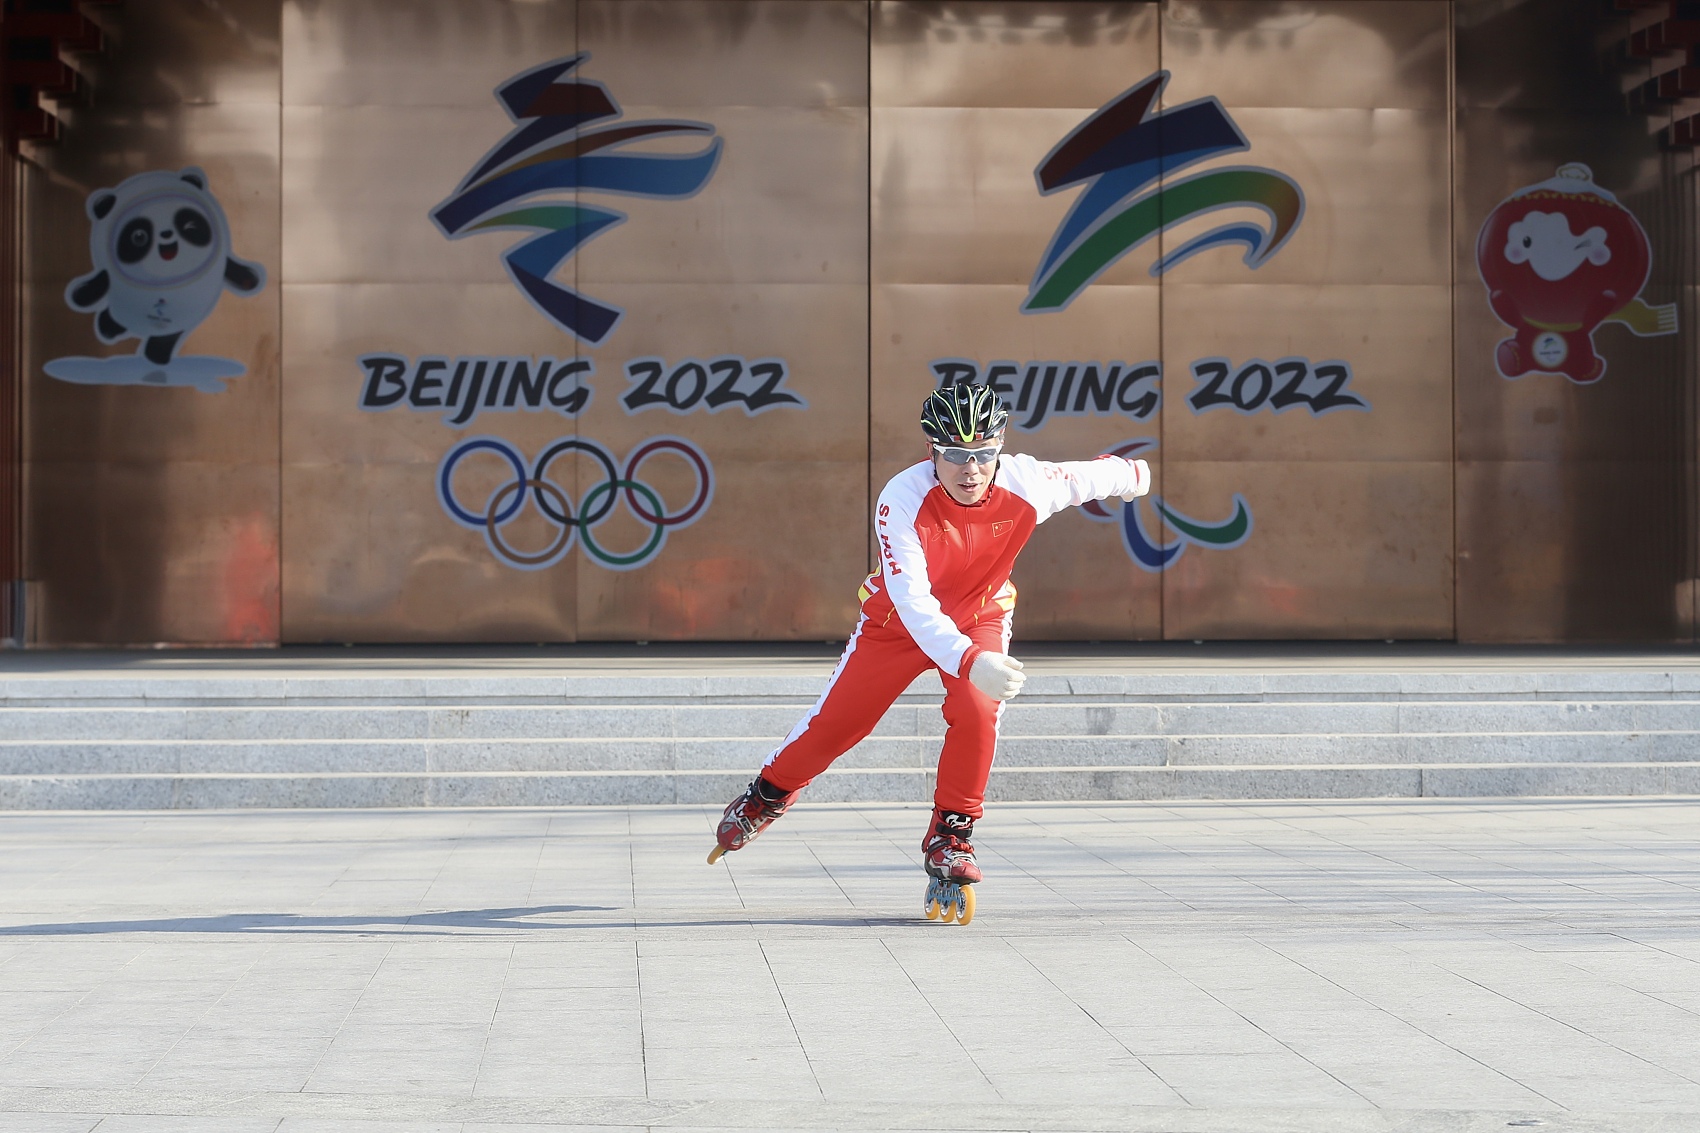 Inside China's Winter Olympic Training Base